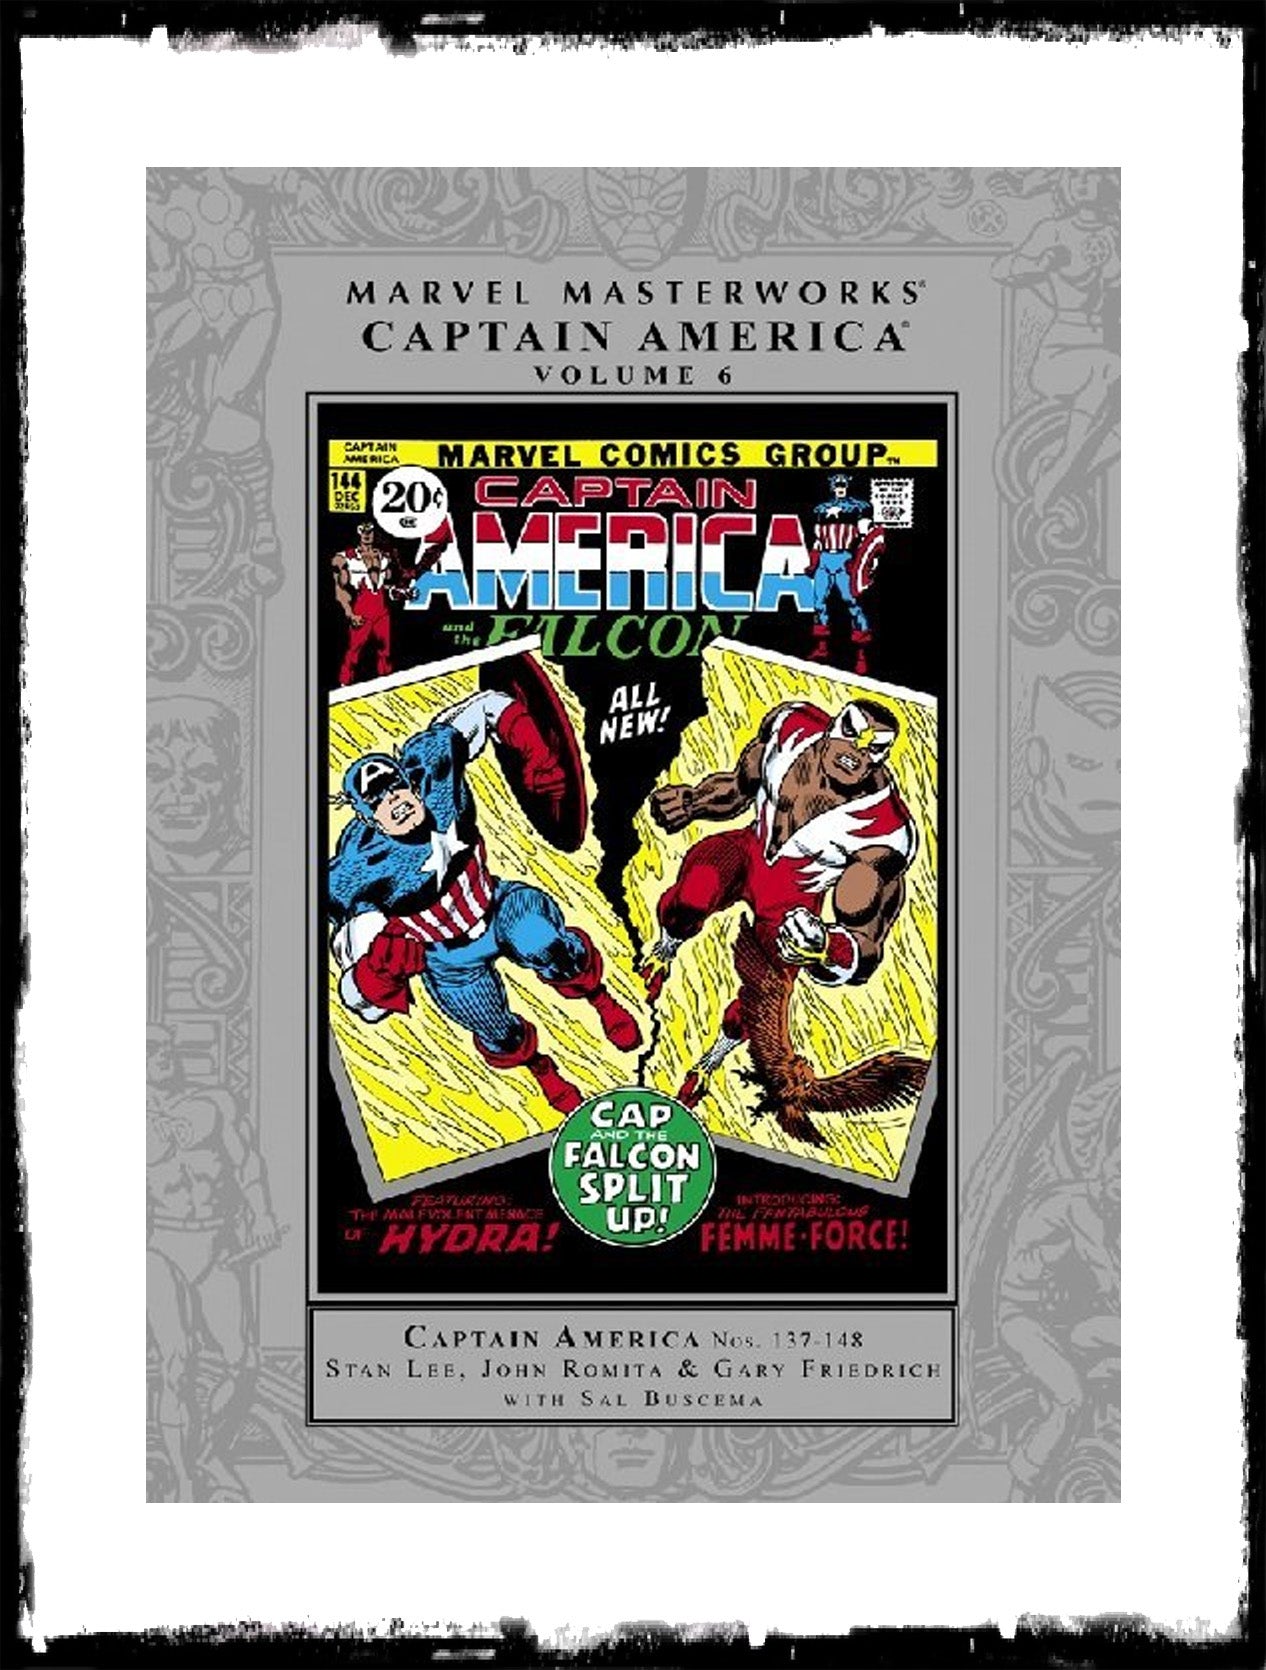 MARVEL MASTERWORKS: CAPTAIN AMERICA - VOLUME 6 HARDCOVER